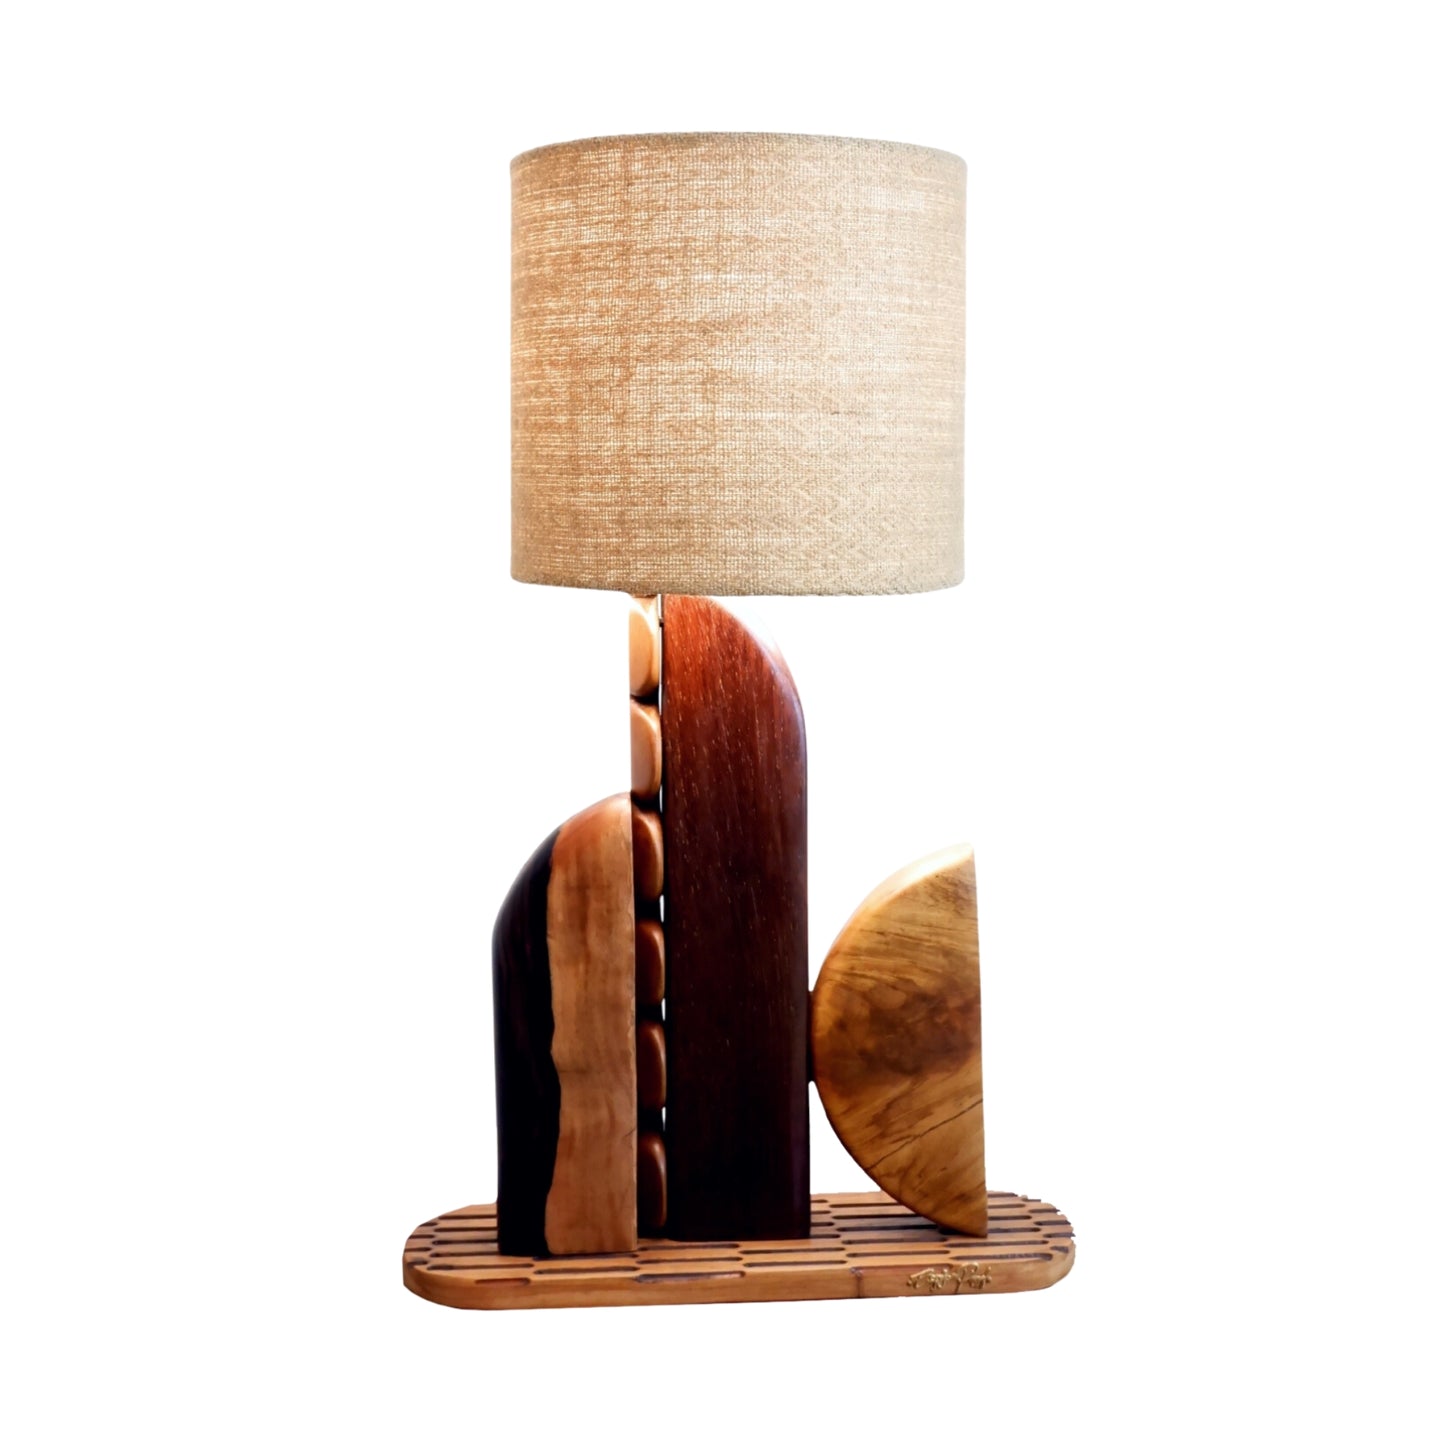 Filipino Inspired Lamp